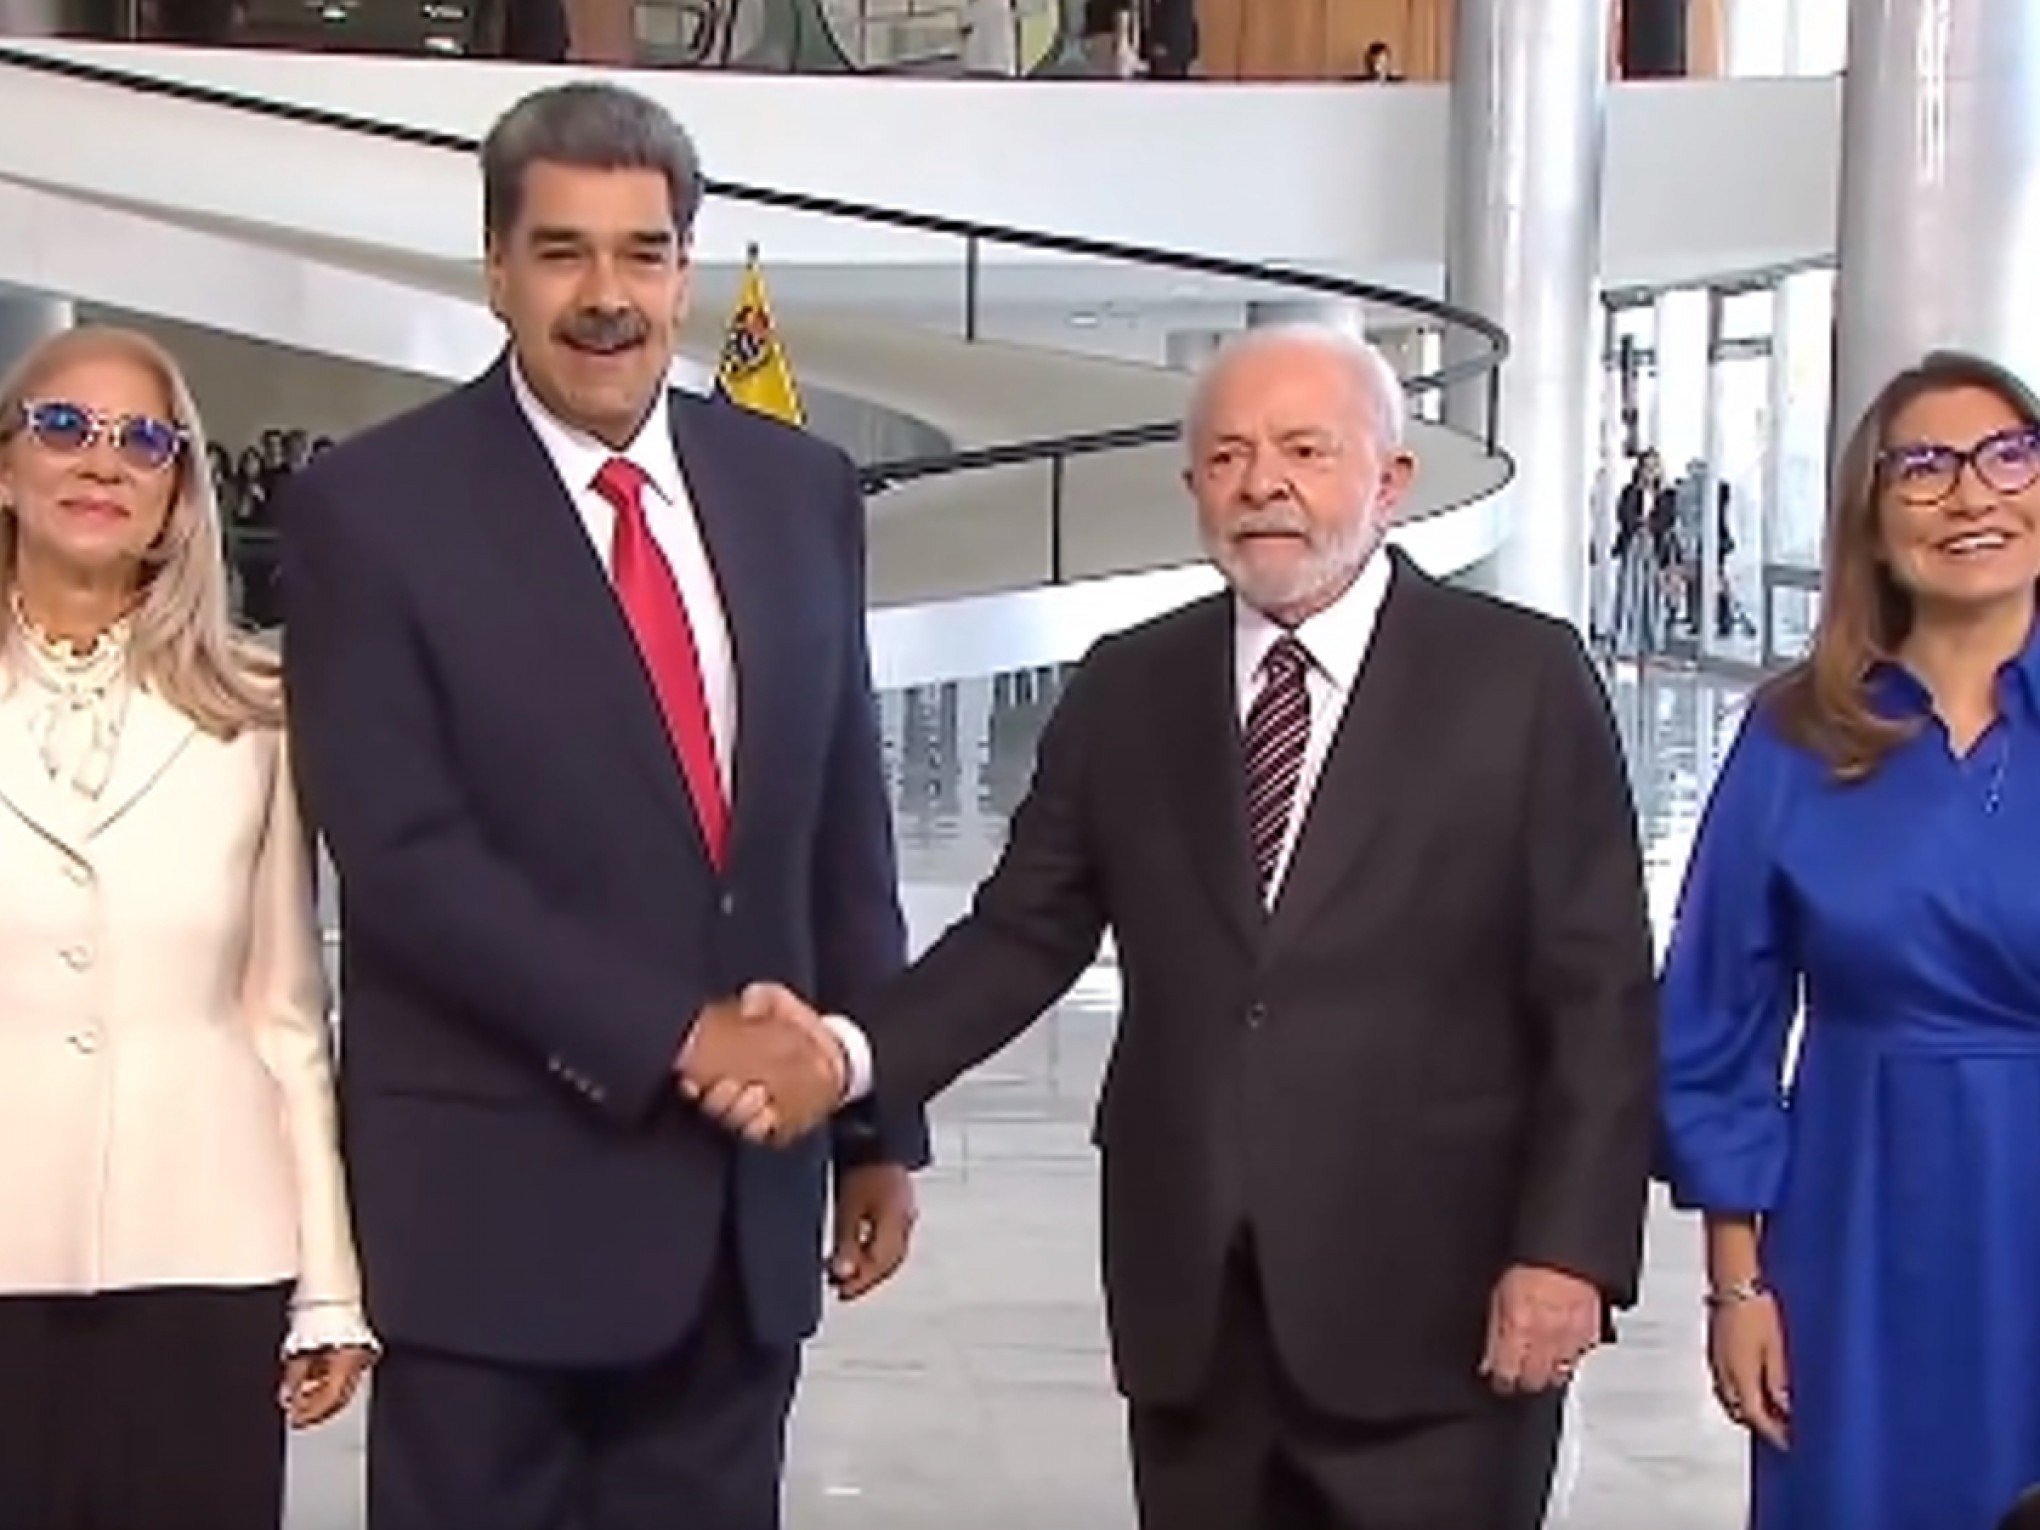 ENCONTRO COM MADURO: O que o presidente da Venezuela deve falar com Lula em visita ao País